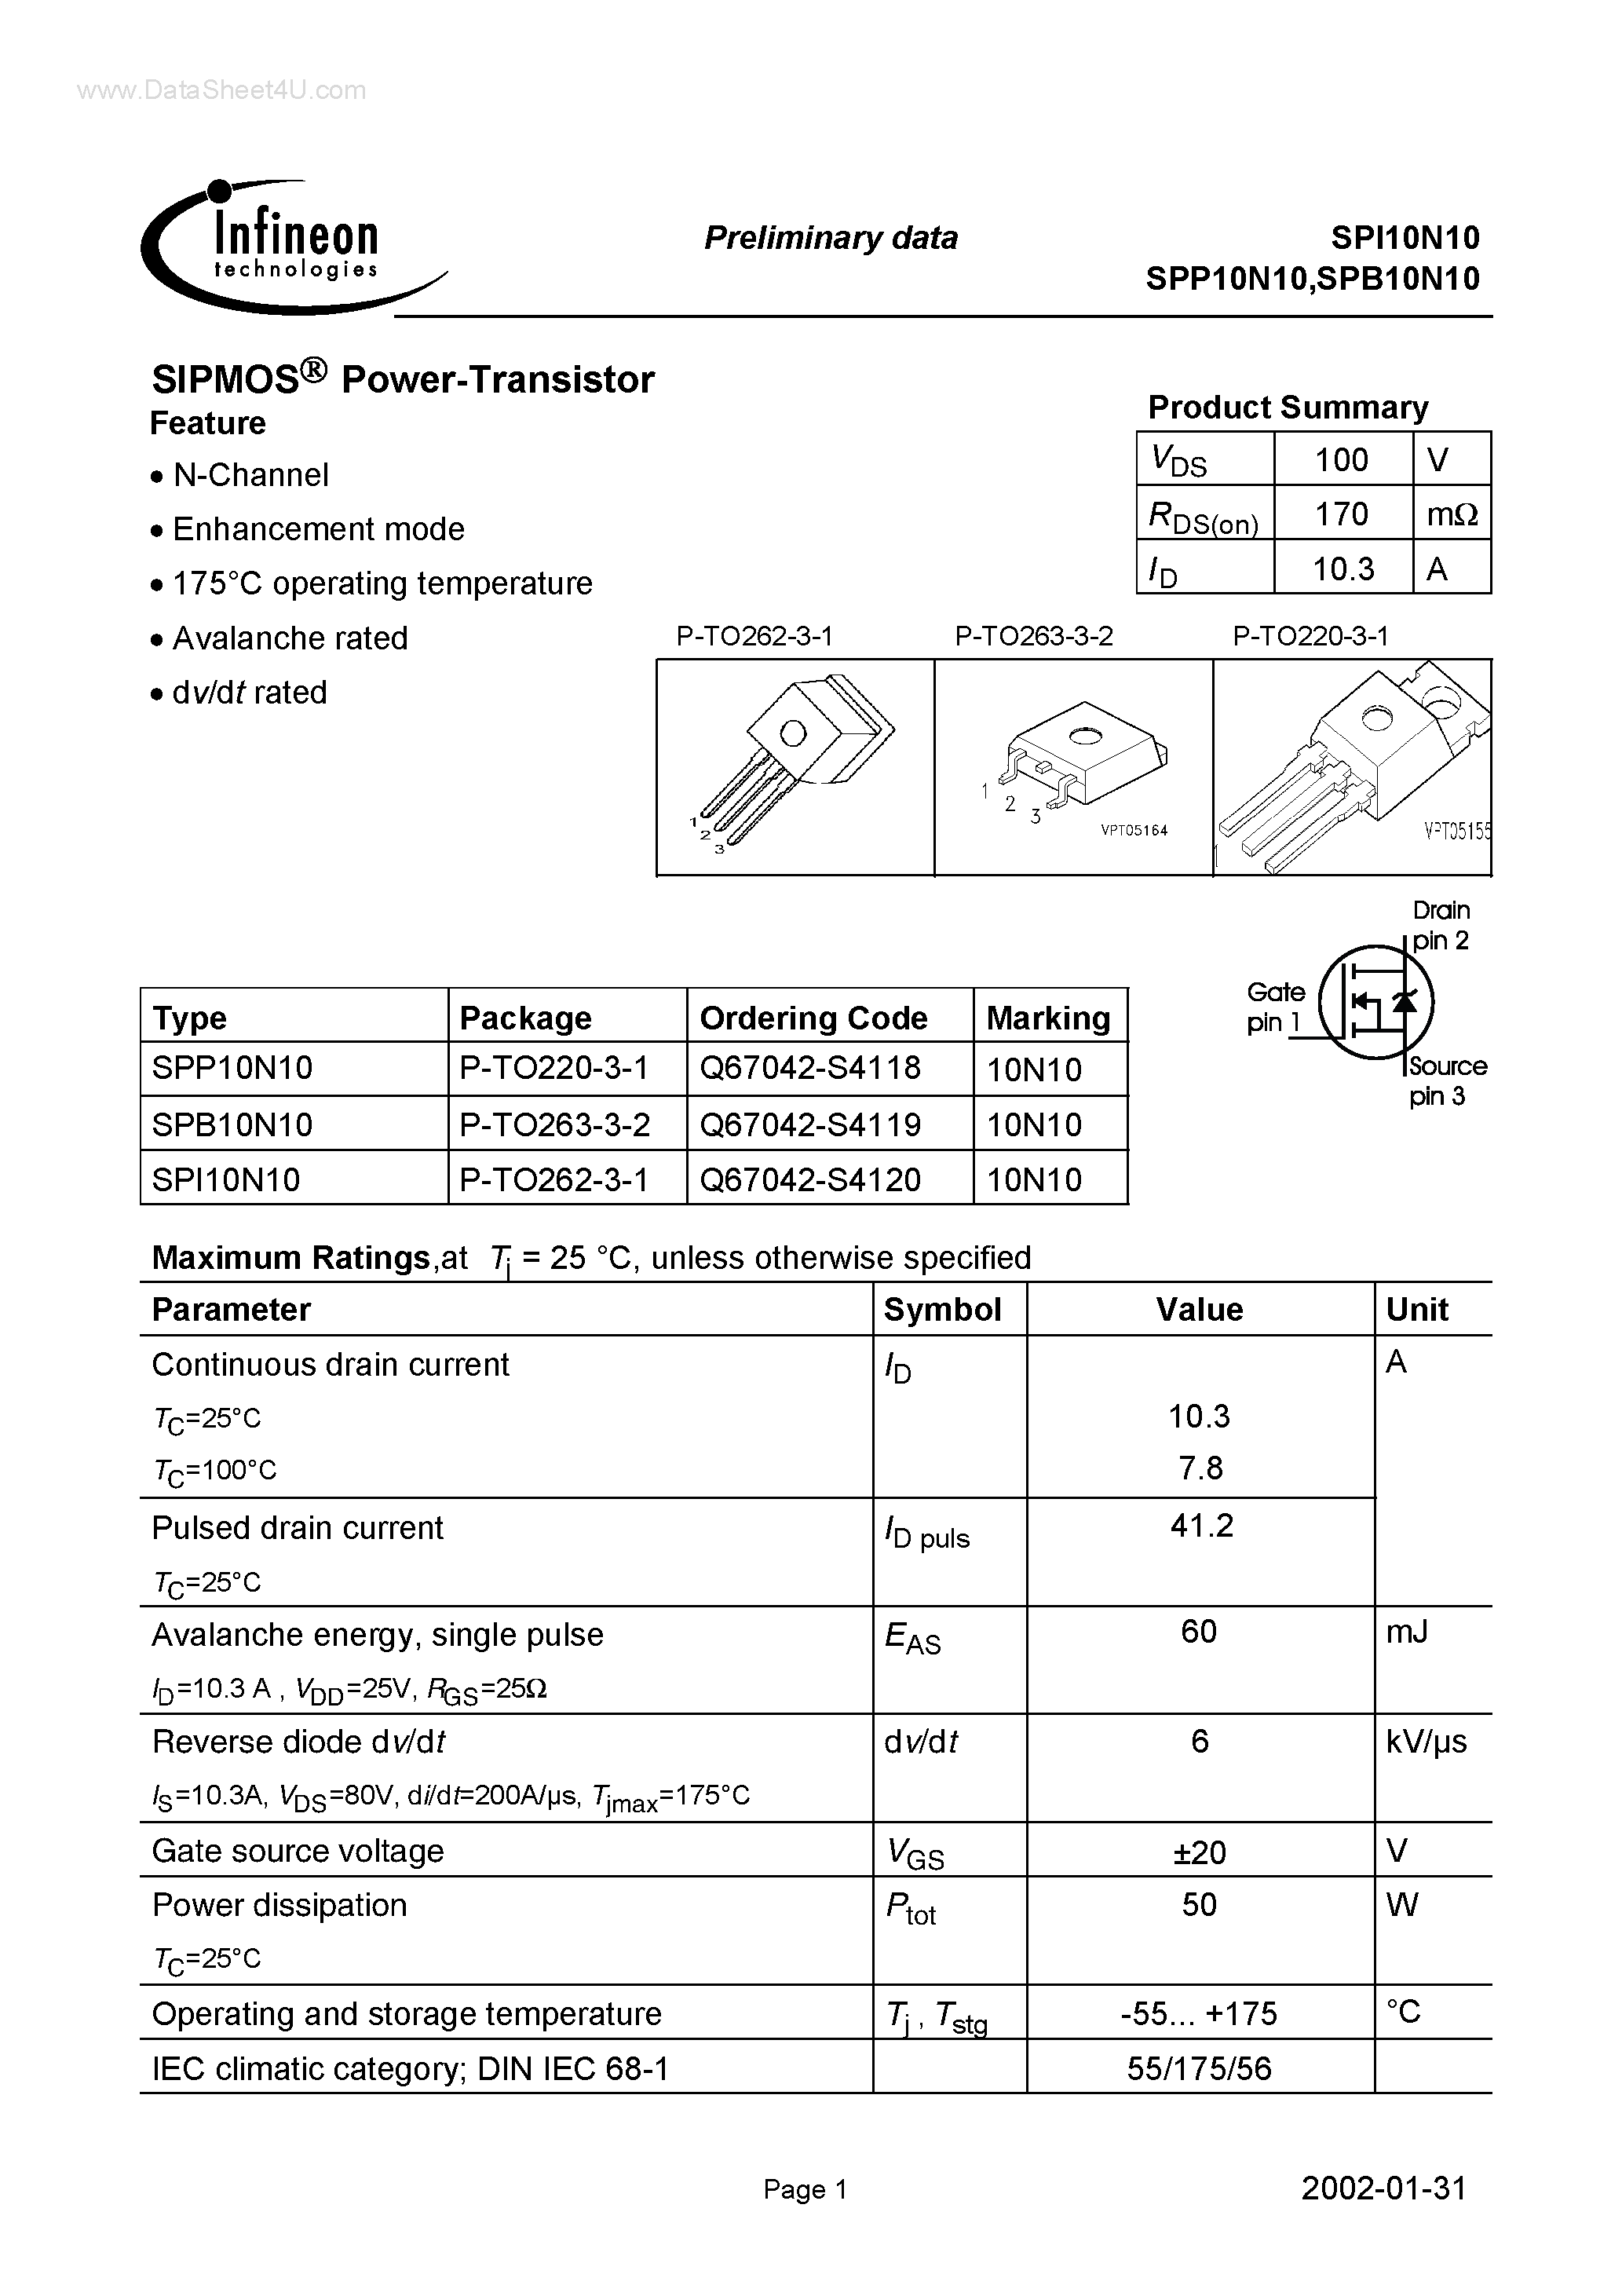 Datasheet SPI10N10 - SIPMOS Power-Transistor page 1